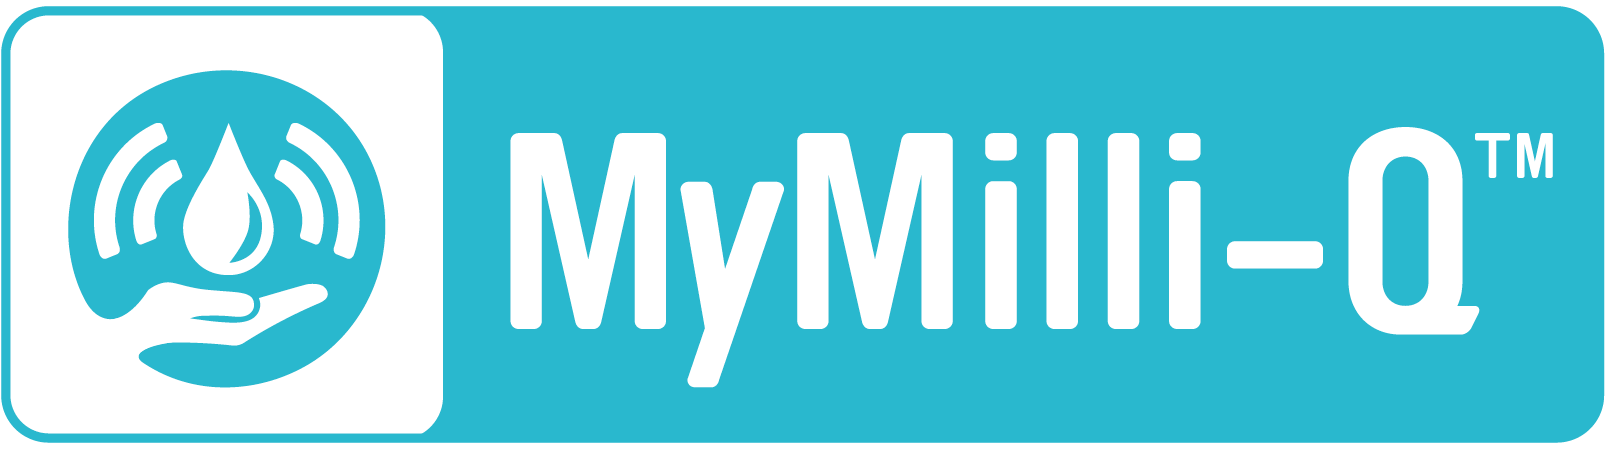 MyMilli-Q™ Digital Services Sticker Icon